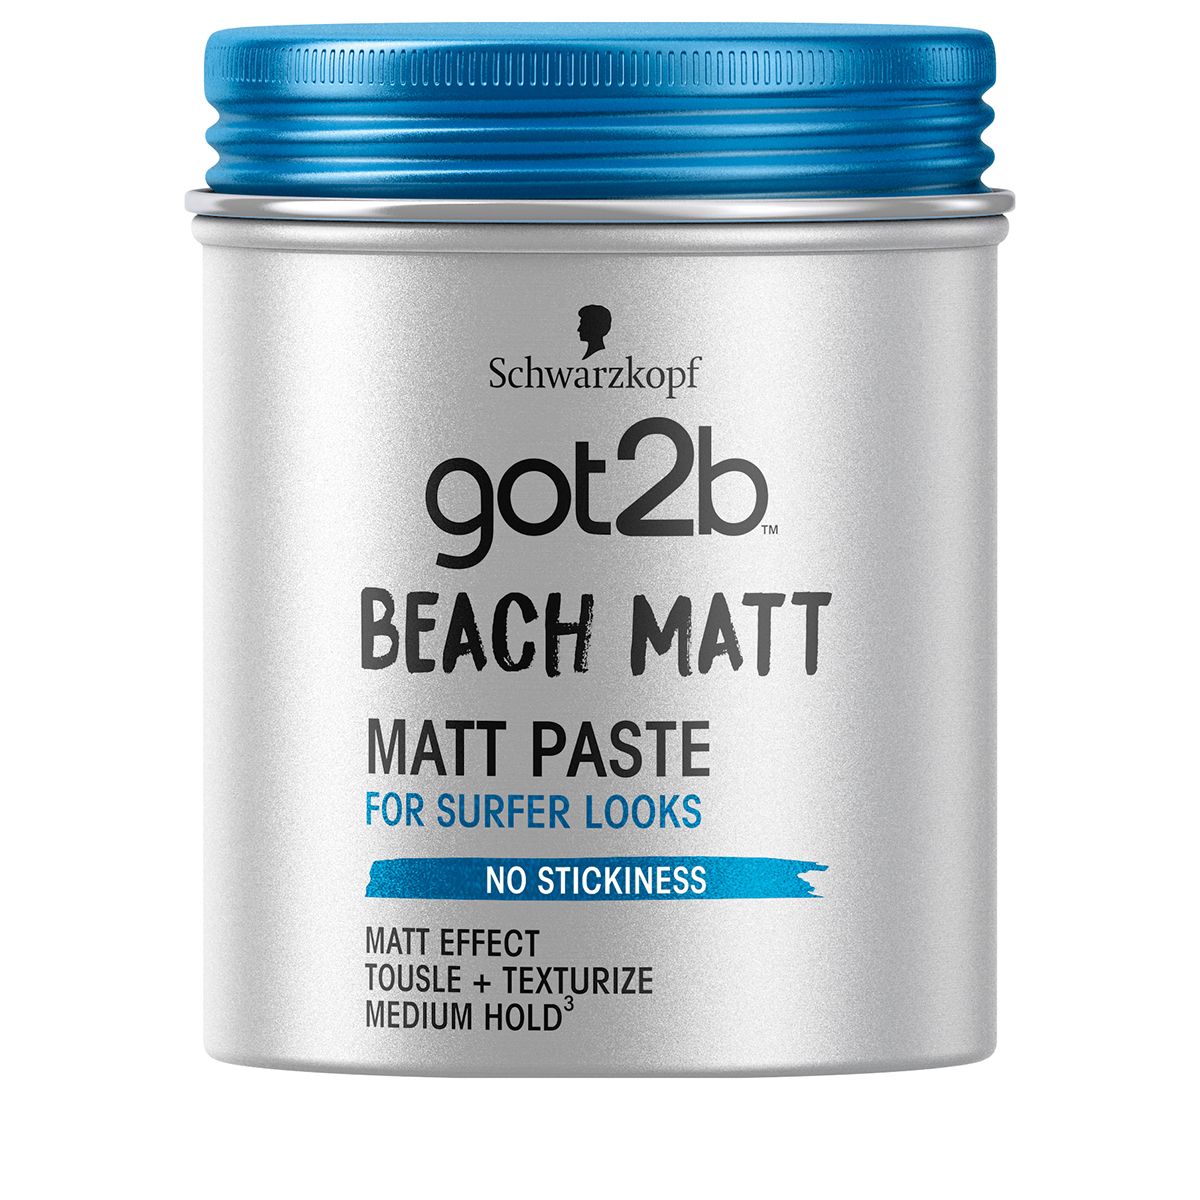 Beach Matt